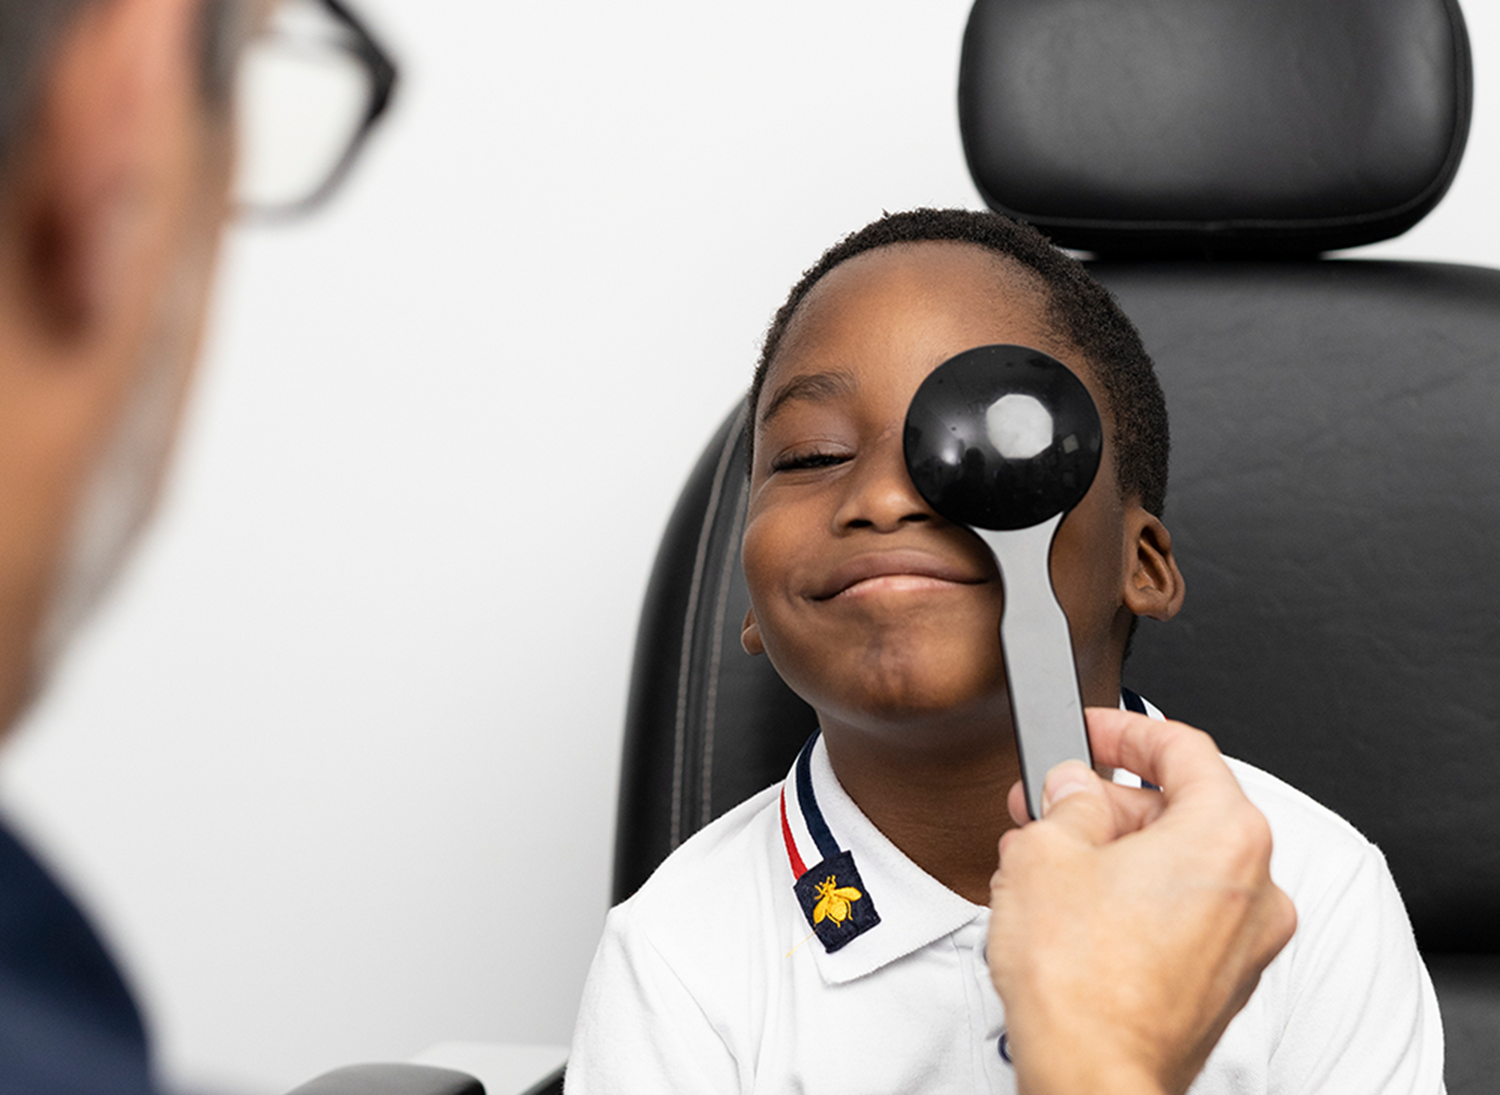 Child eye exam right eye examination